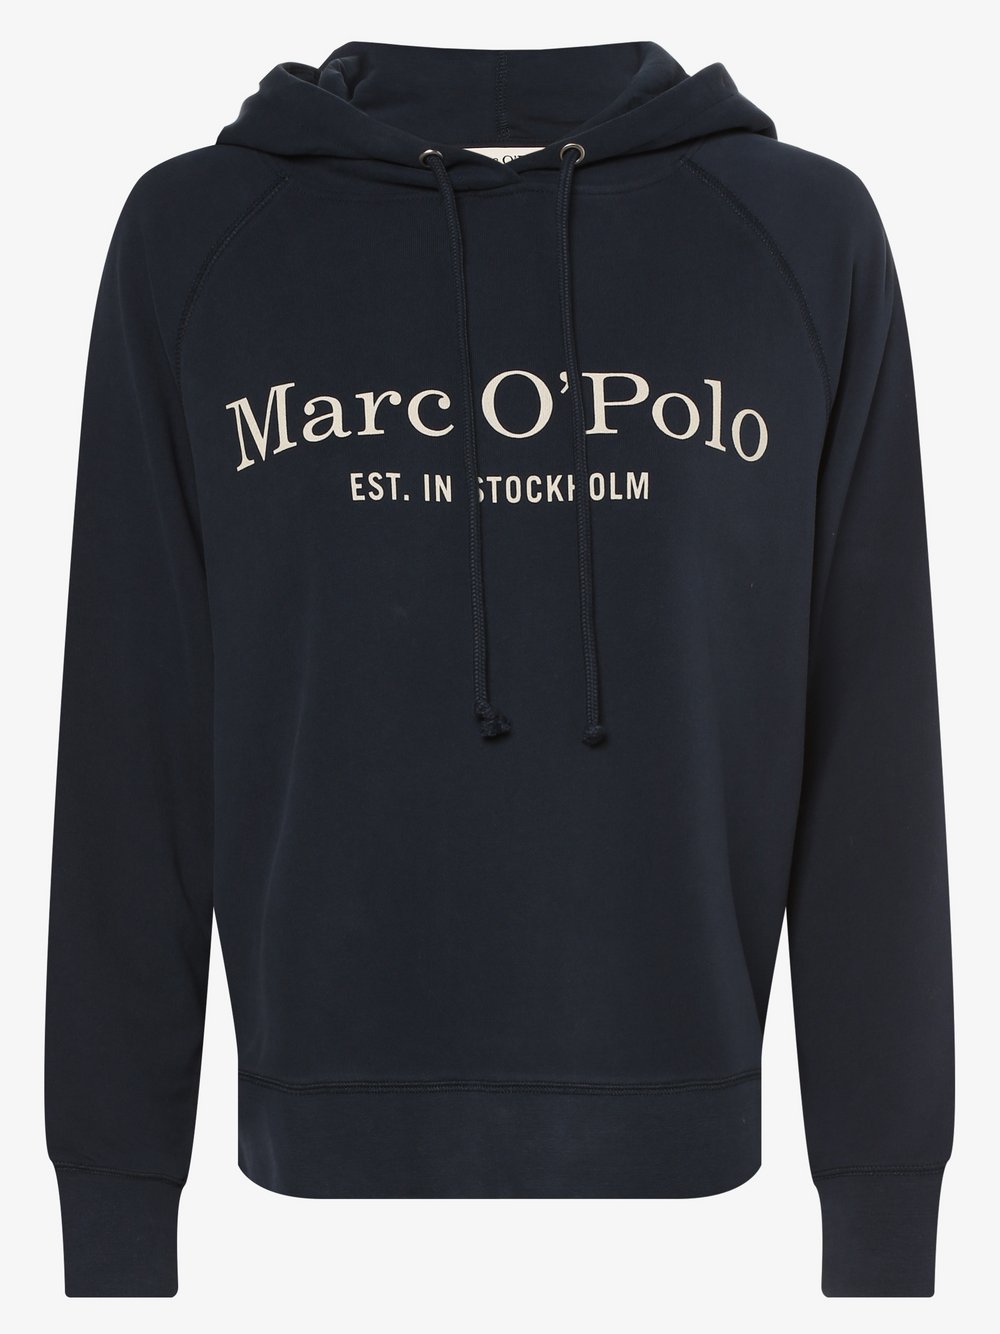 Marc O'Polo - Damska bluza z kapturem, wielokolorowy